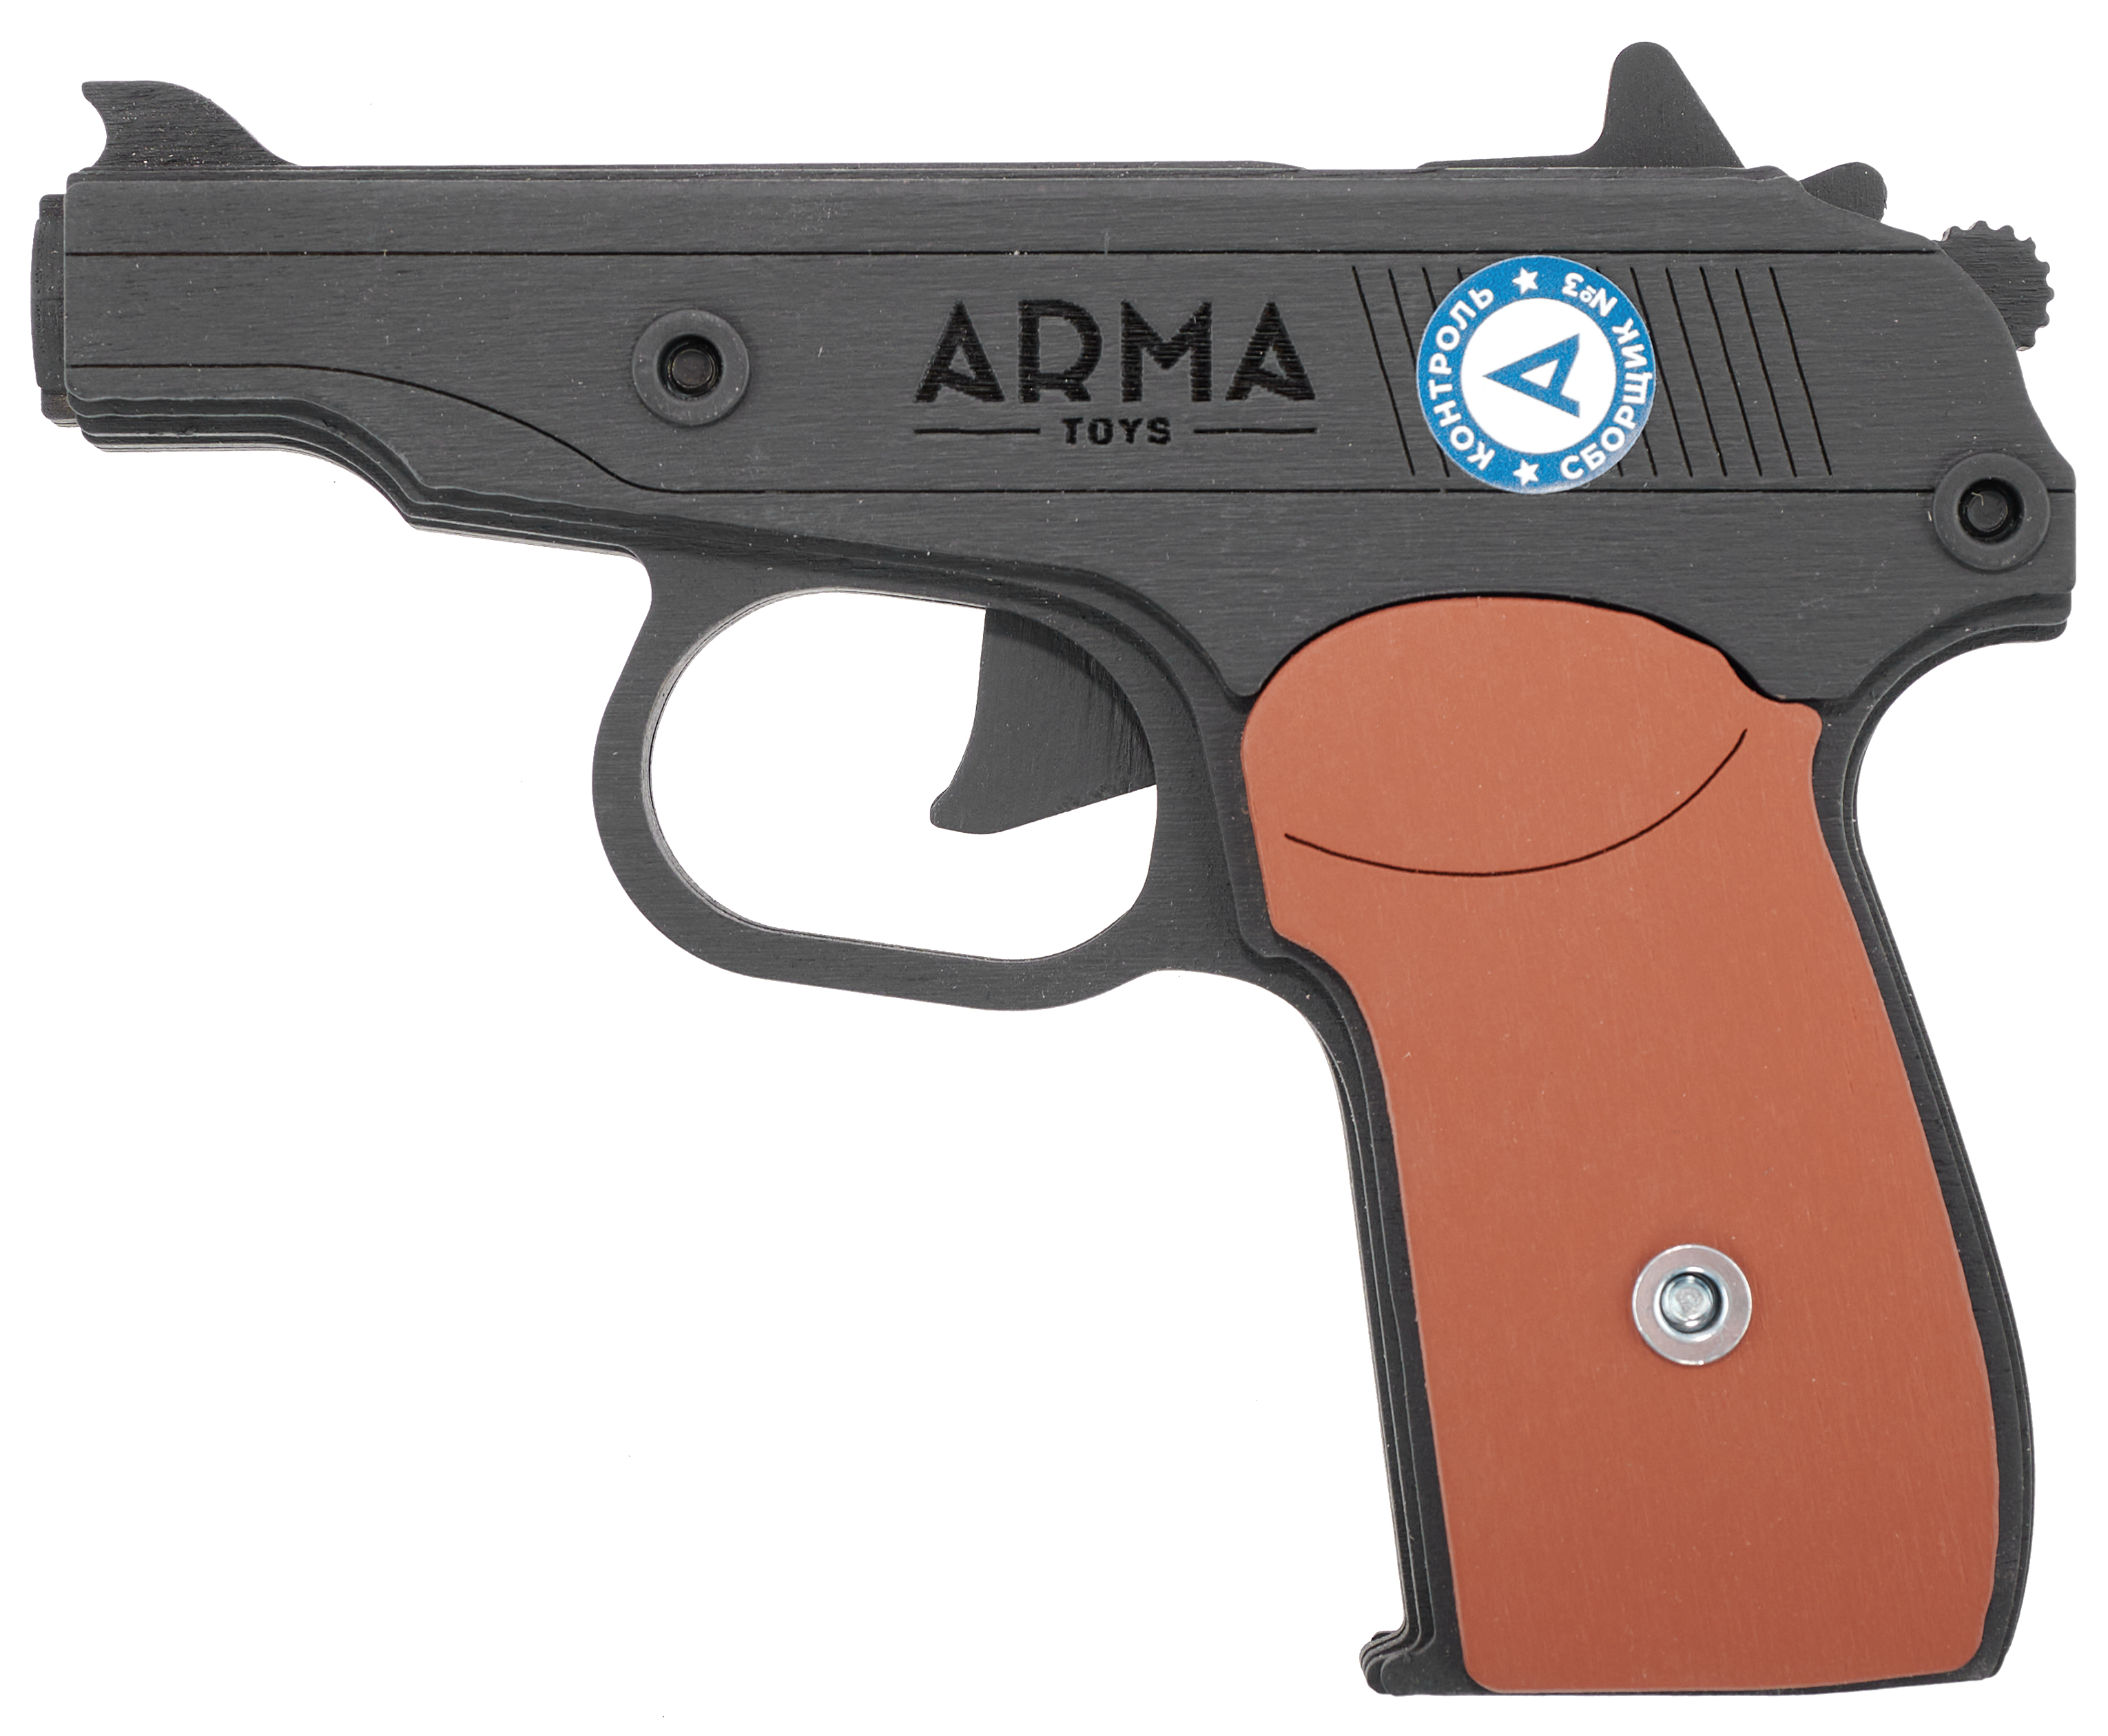 Резинкострел игрушечный Arma toys пистолет Макарова макет, ПМ, окрашенный, AT012K резинкострел игрушечный arma toys пистолет люгер макет luger parabellum p08 at024k